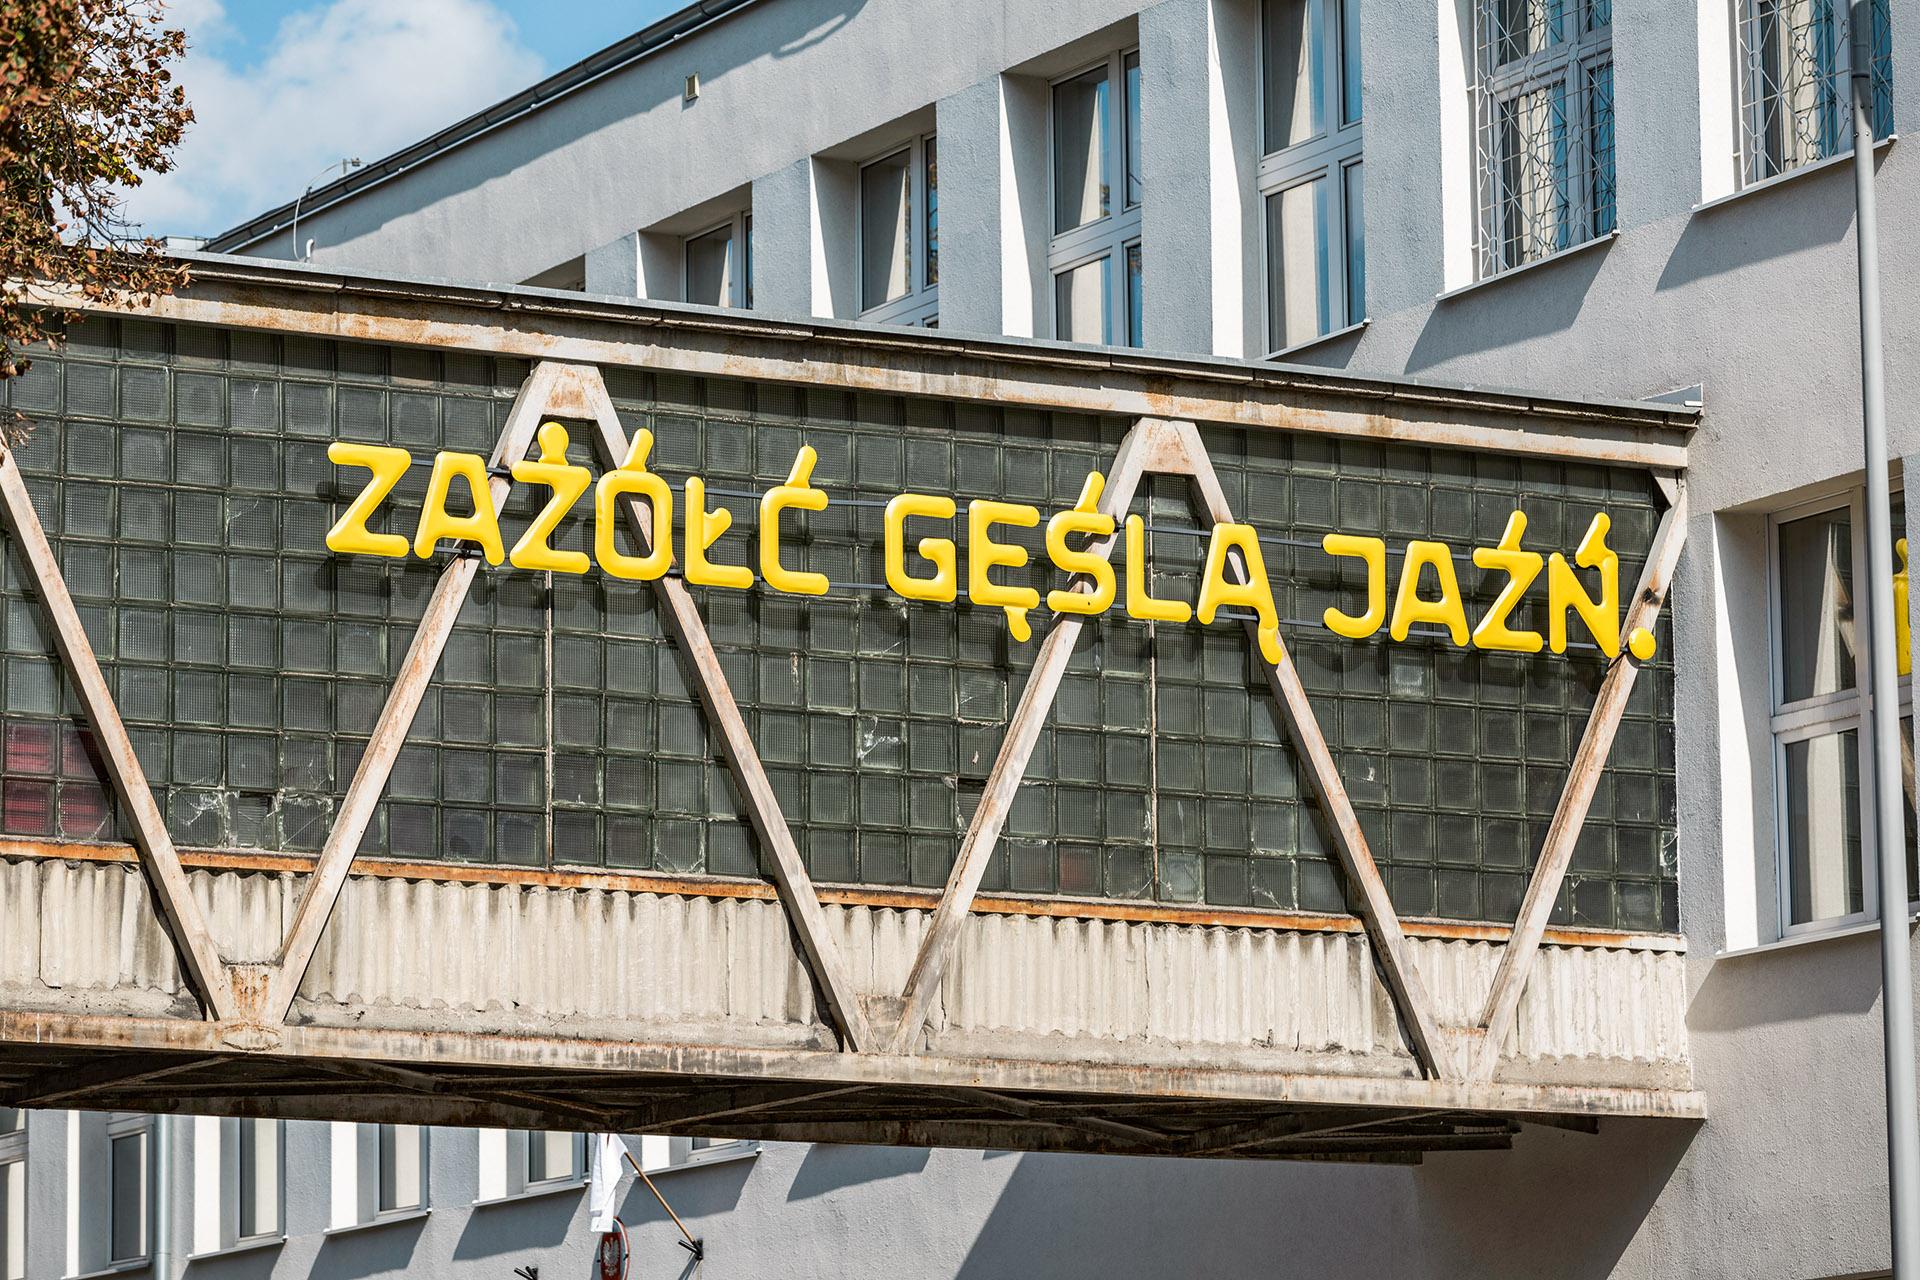  Instalacja artystyczna Mariana Misiaka i Oskara Zięty, zdanie prezentuje wszystkie znaki diakrytyczne w języku polskim, Gdynia. (Fot. Rafał Kołsut/Traffic Design)